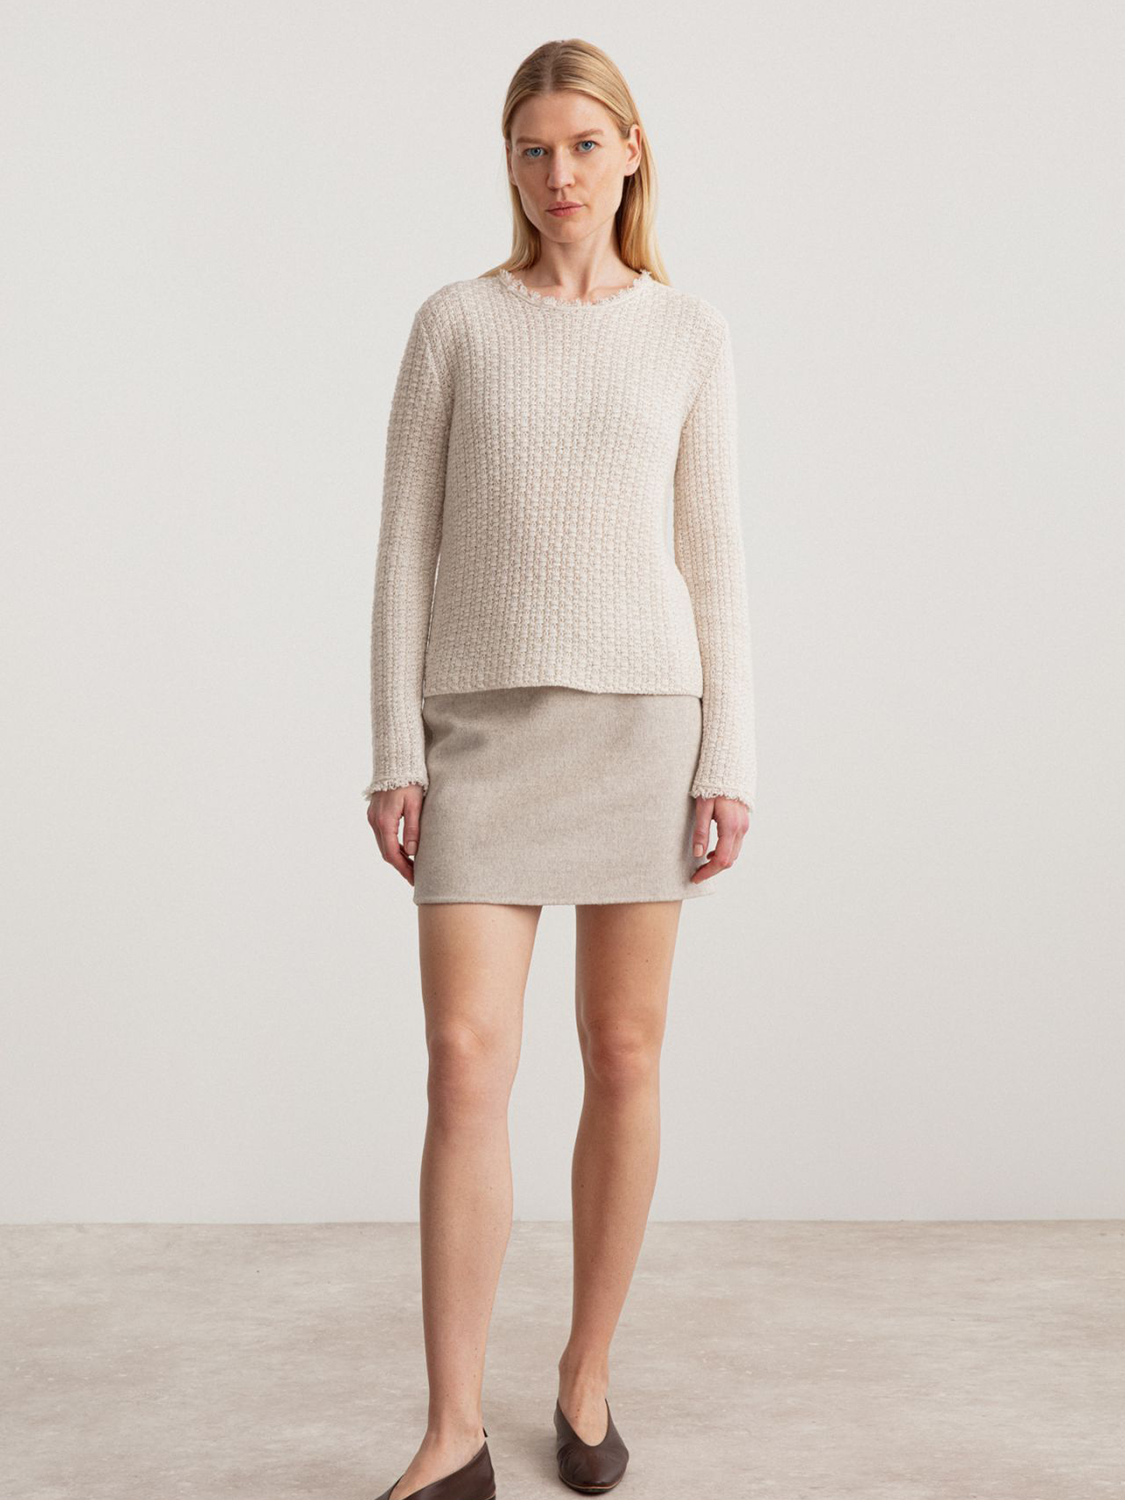 Iris von Arnim Dover – mini skirt made of cashmere and virgin wool mix  beige 38